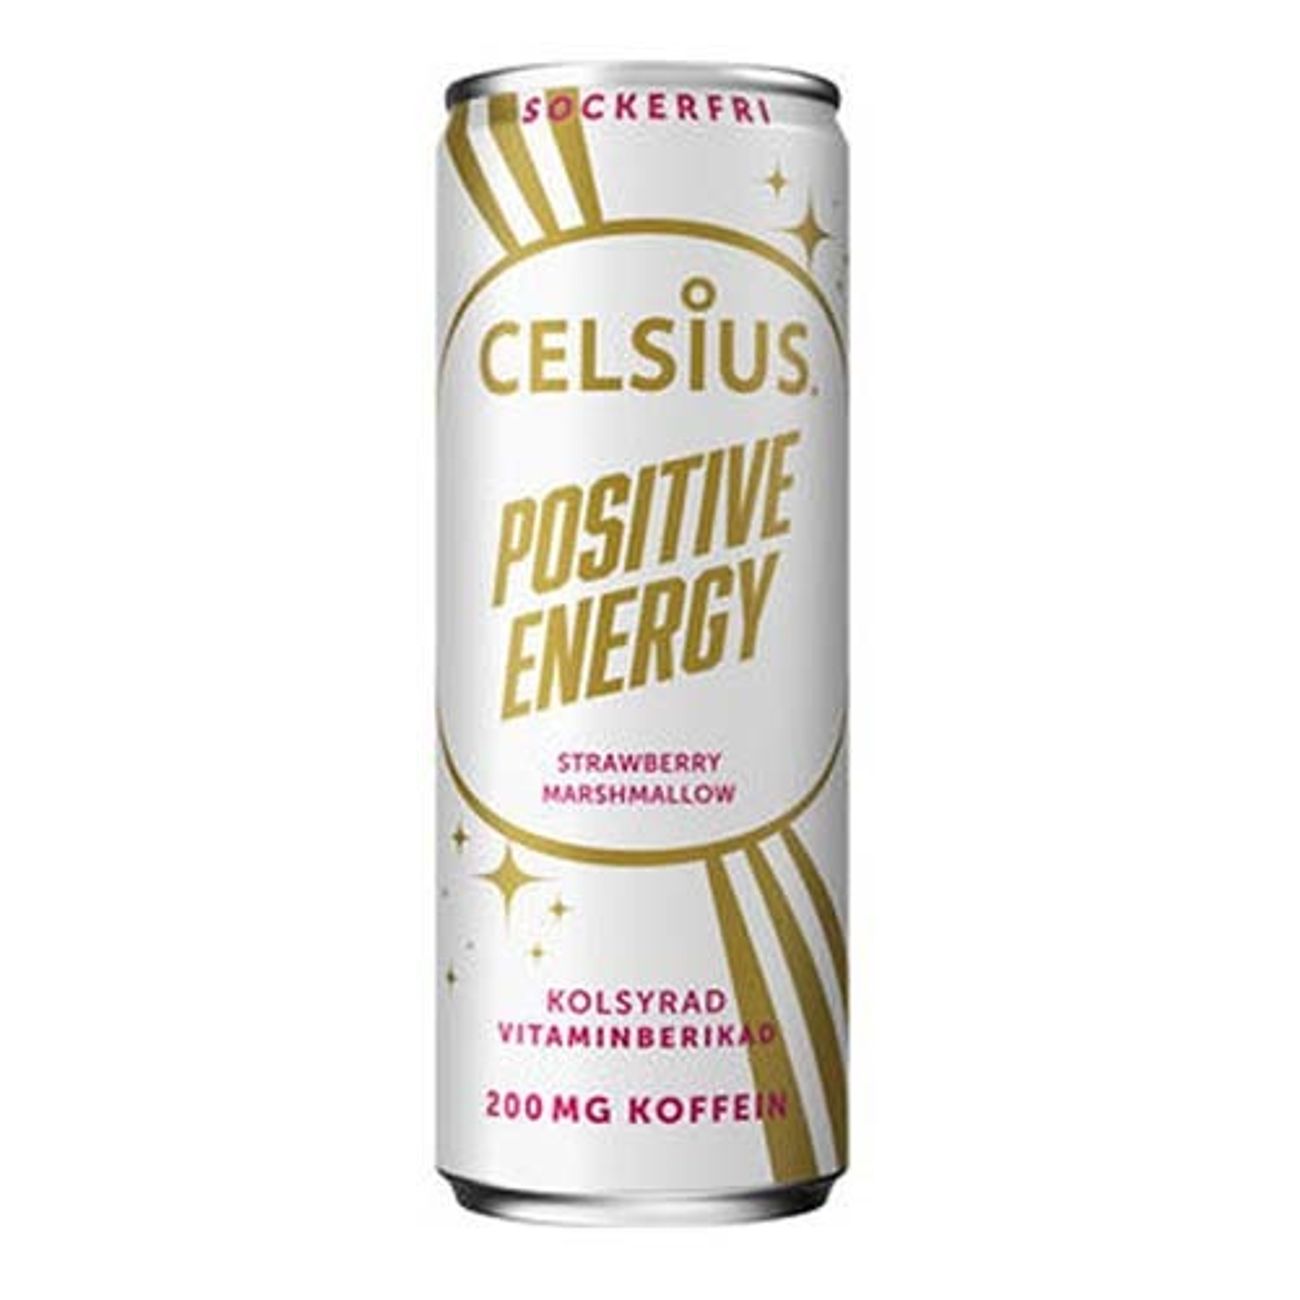 celsius-positive-energy-1